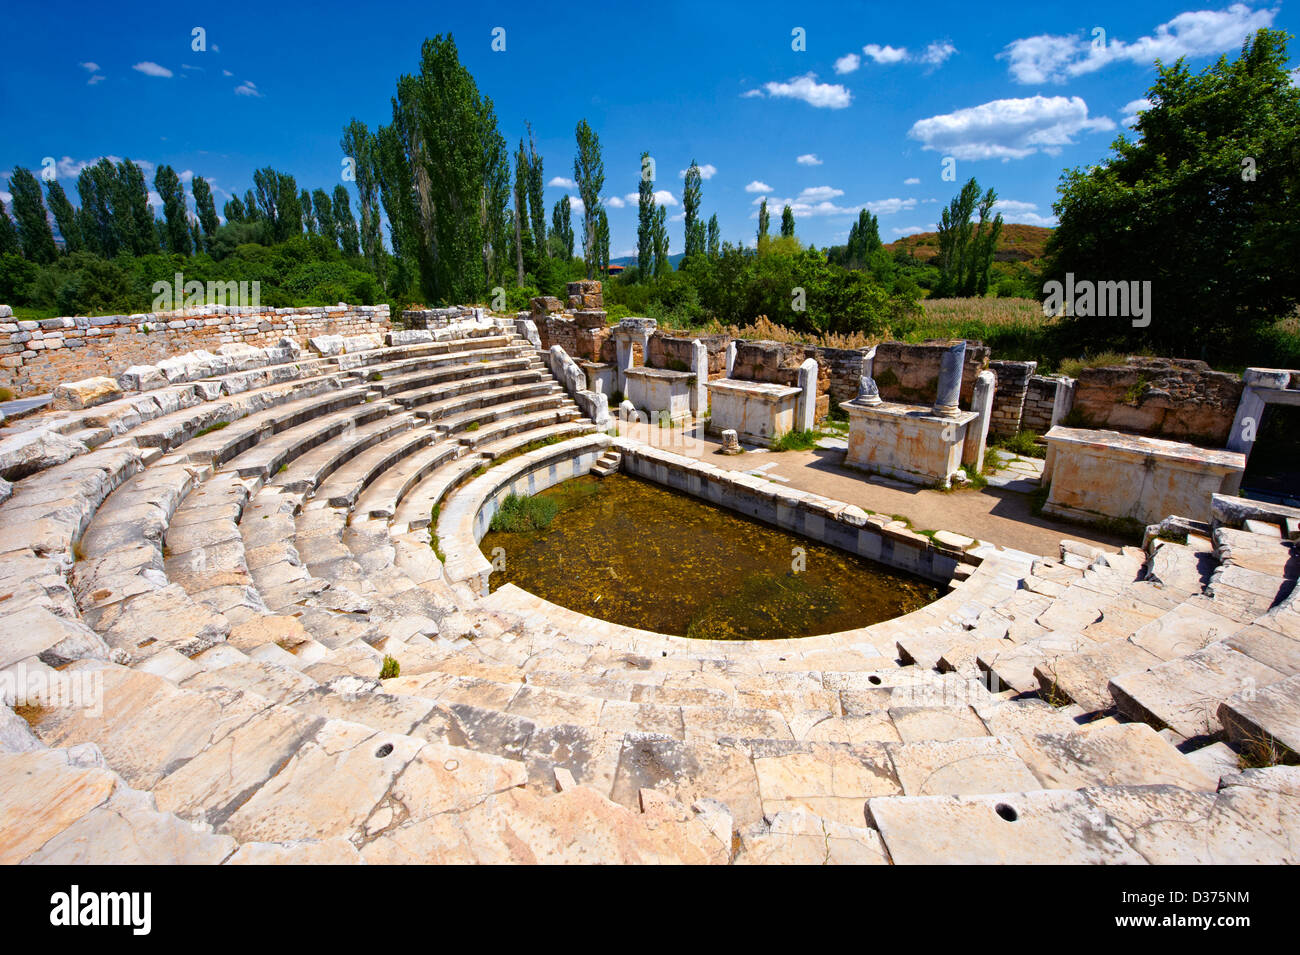 Théâtre de l'odéon romain site archéologique d'Aphrodisias, Turquie Banque D'Images